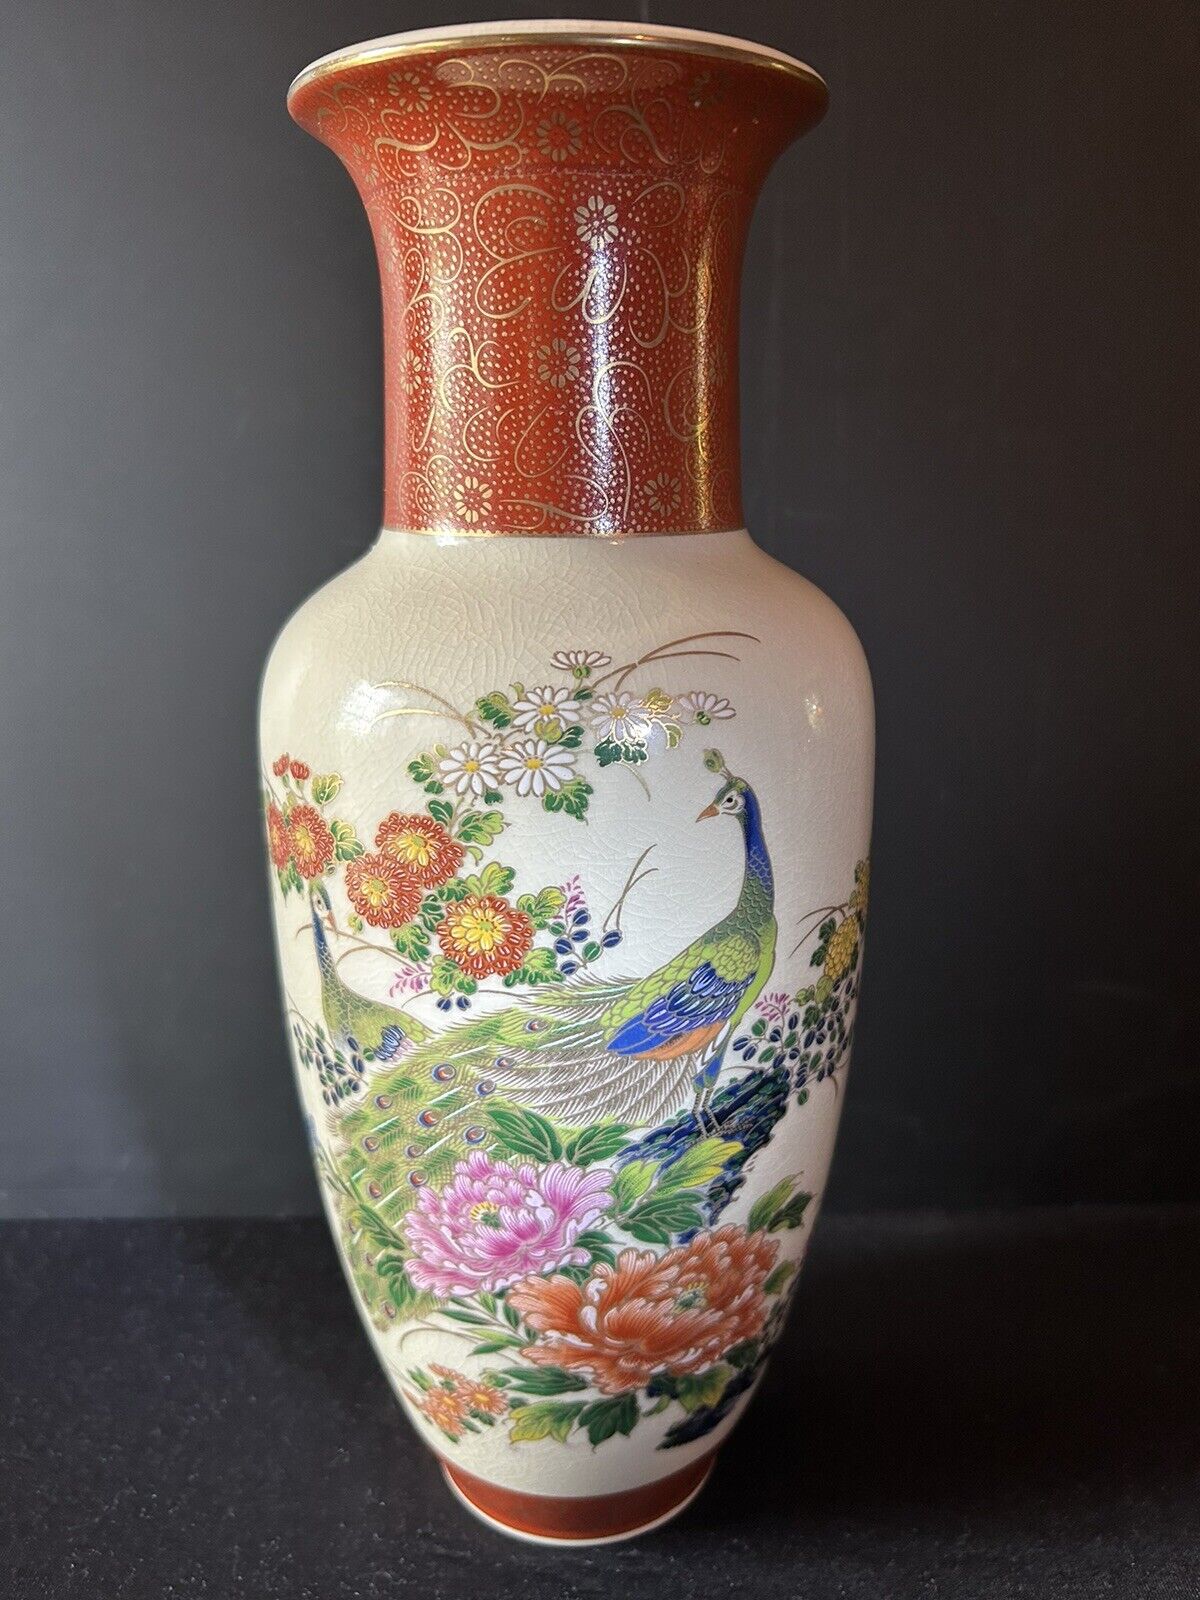 Japanese Peacock & Floral  Vase Porcelain Gold Trim Crackle Glaze 12.25”tall Vtg